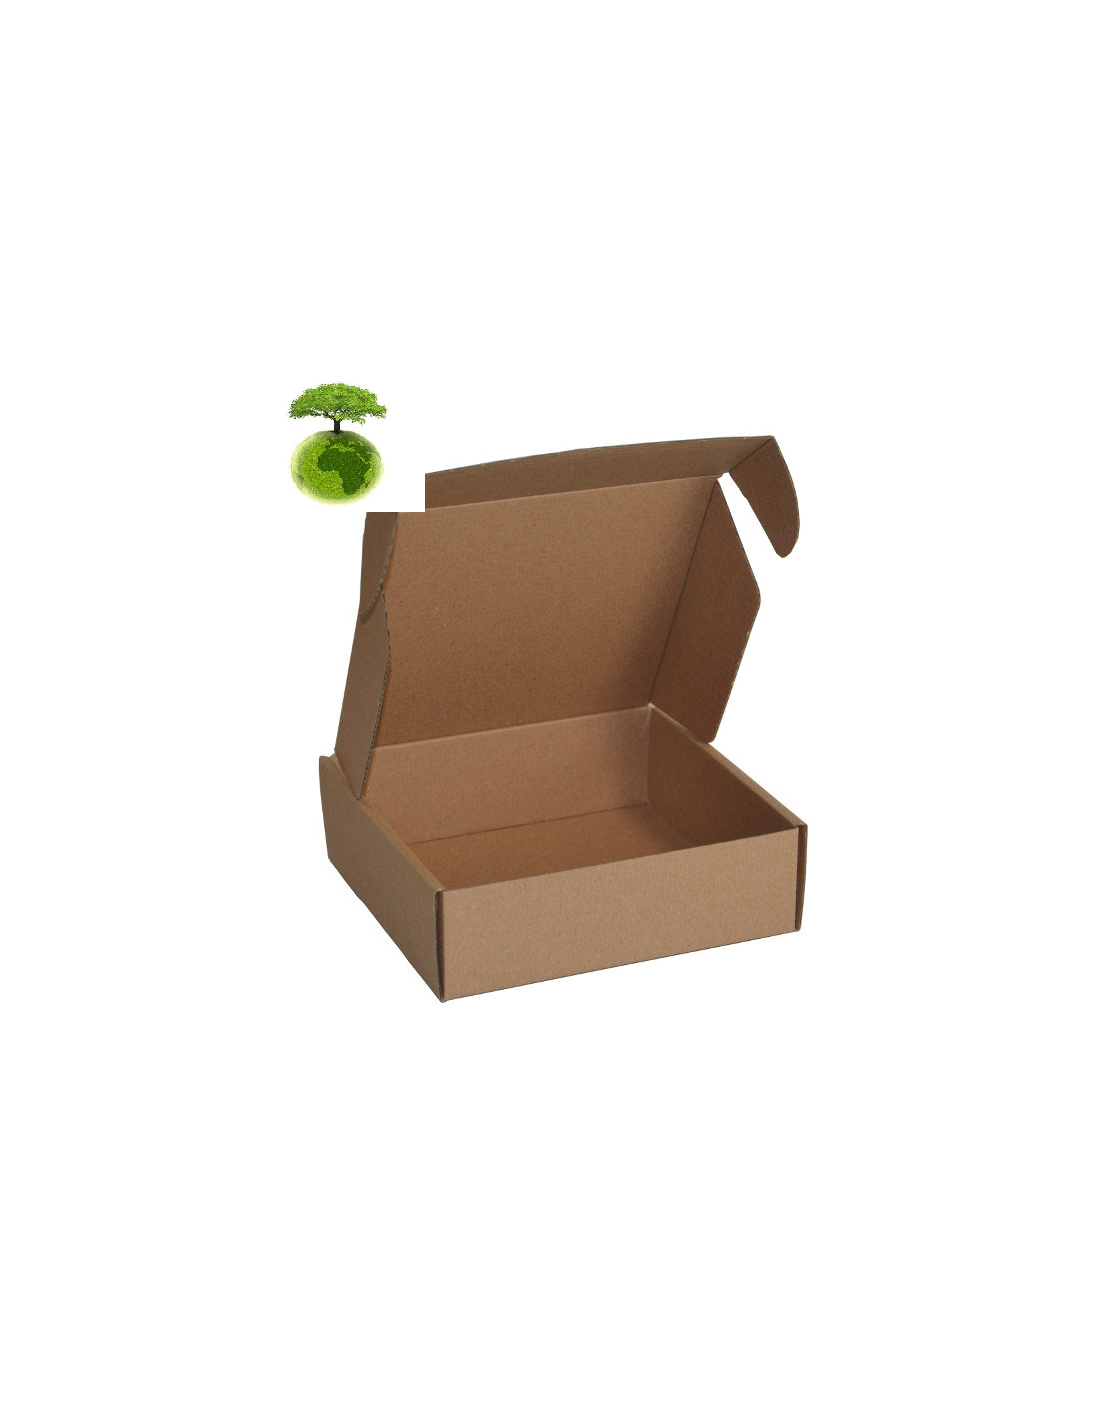 Pochette cartonnée fermeture adhésive - 33 4 x 23 4 cm - La Poste